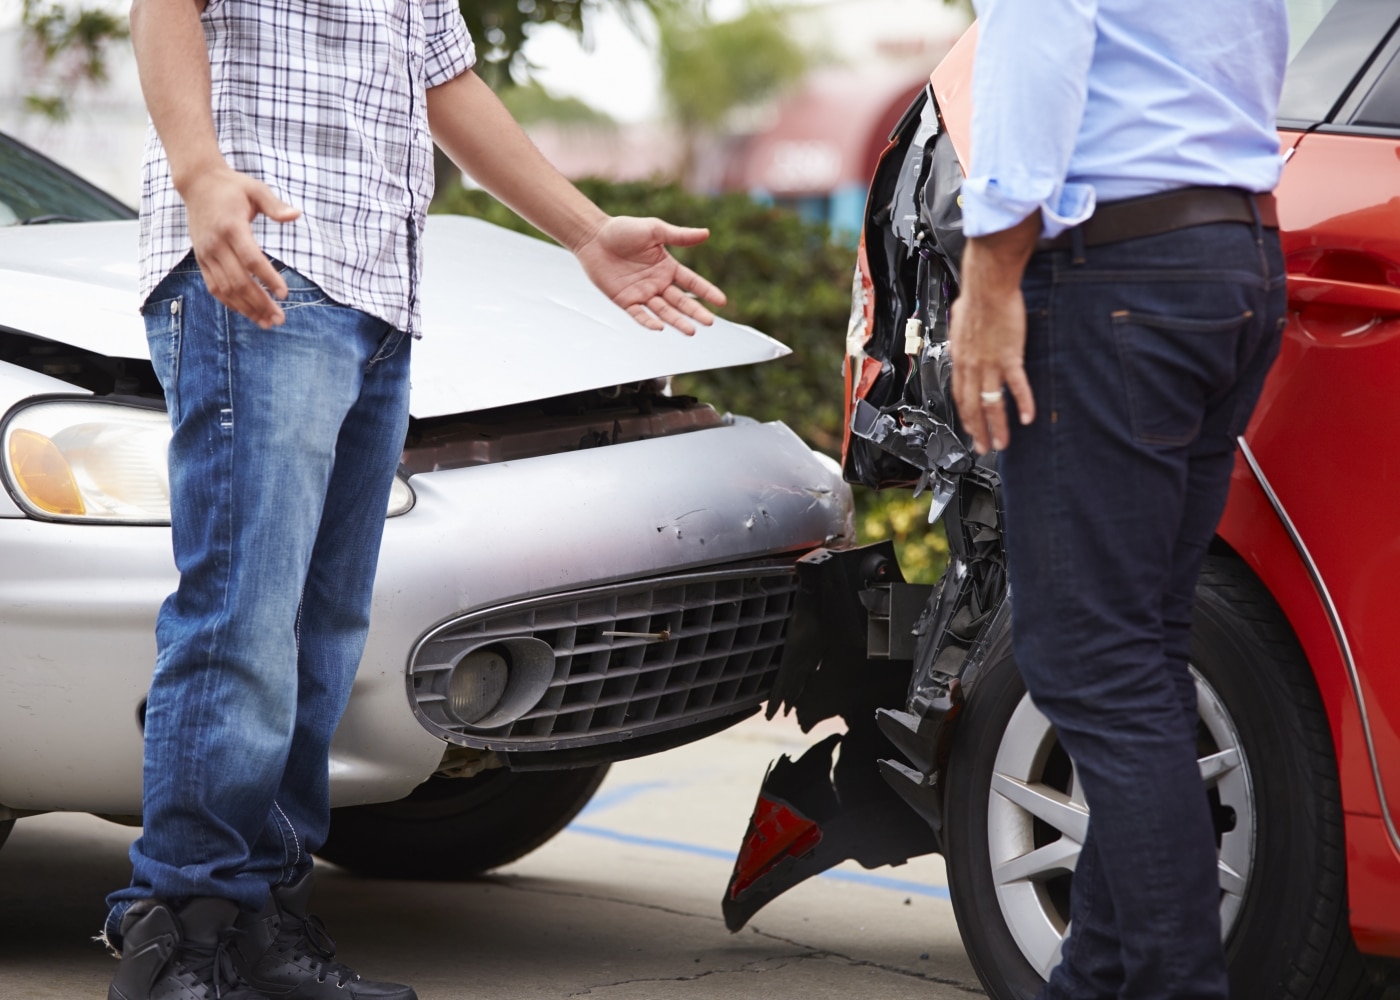 ¿Accidente de automóvil con Uber? sepa cómo proceder